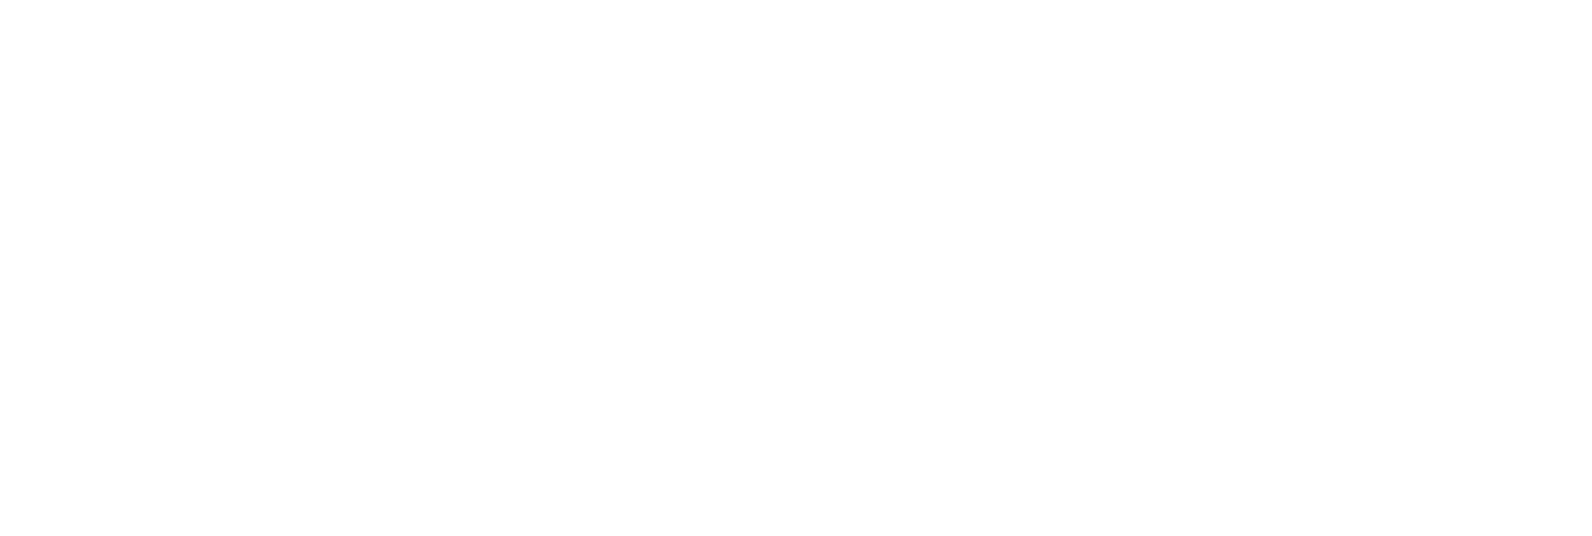 Netwealth Logo groß für dunkle Hintergründe (transparentes PNG)